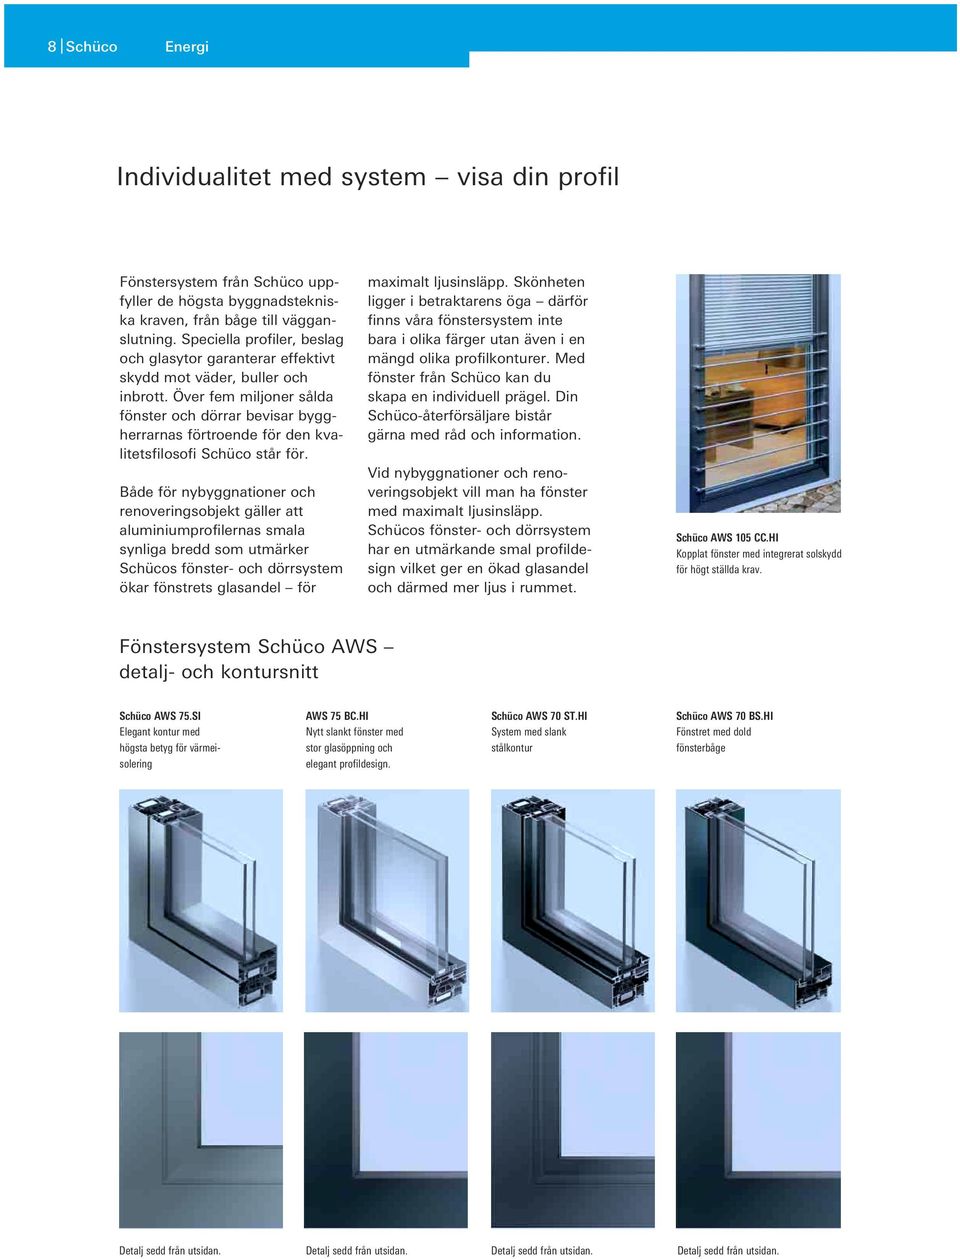 Över fem miljoner sålda fönster och dörrar bevisar byggherrarnas förtroende för den kvalitetsfilosofi Schüco står för.